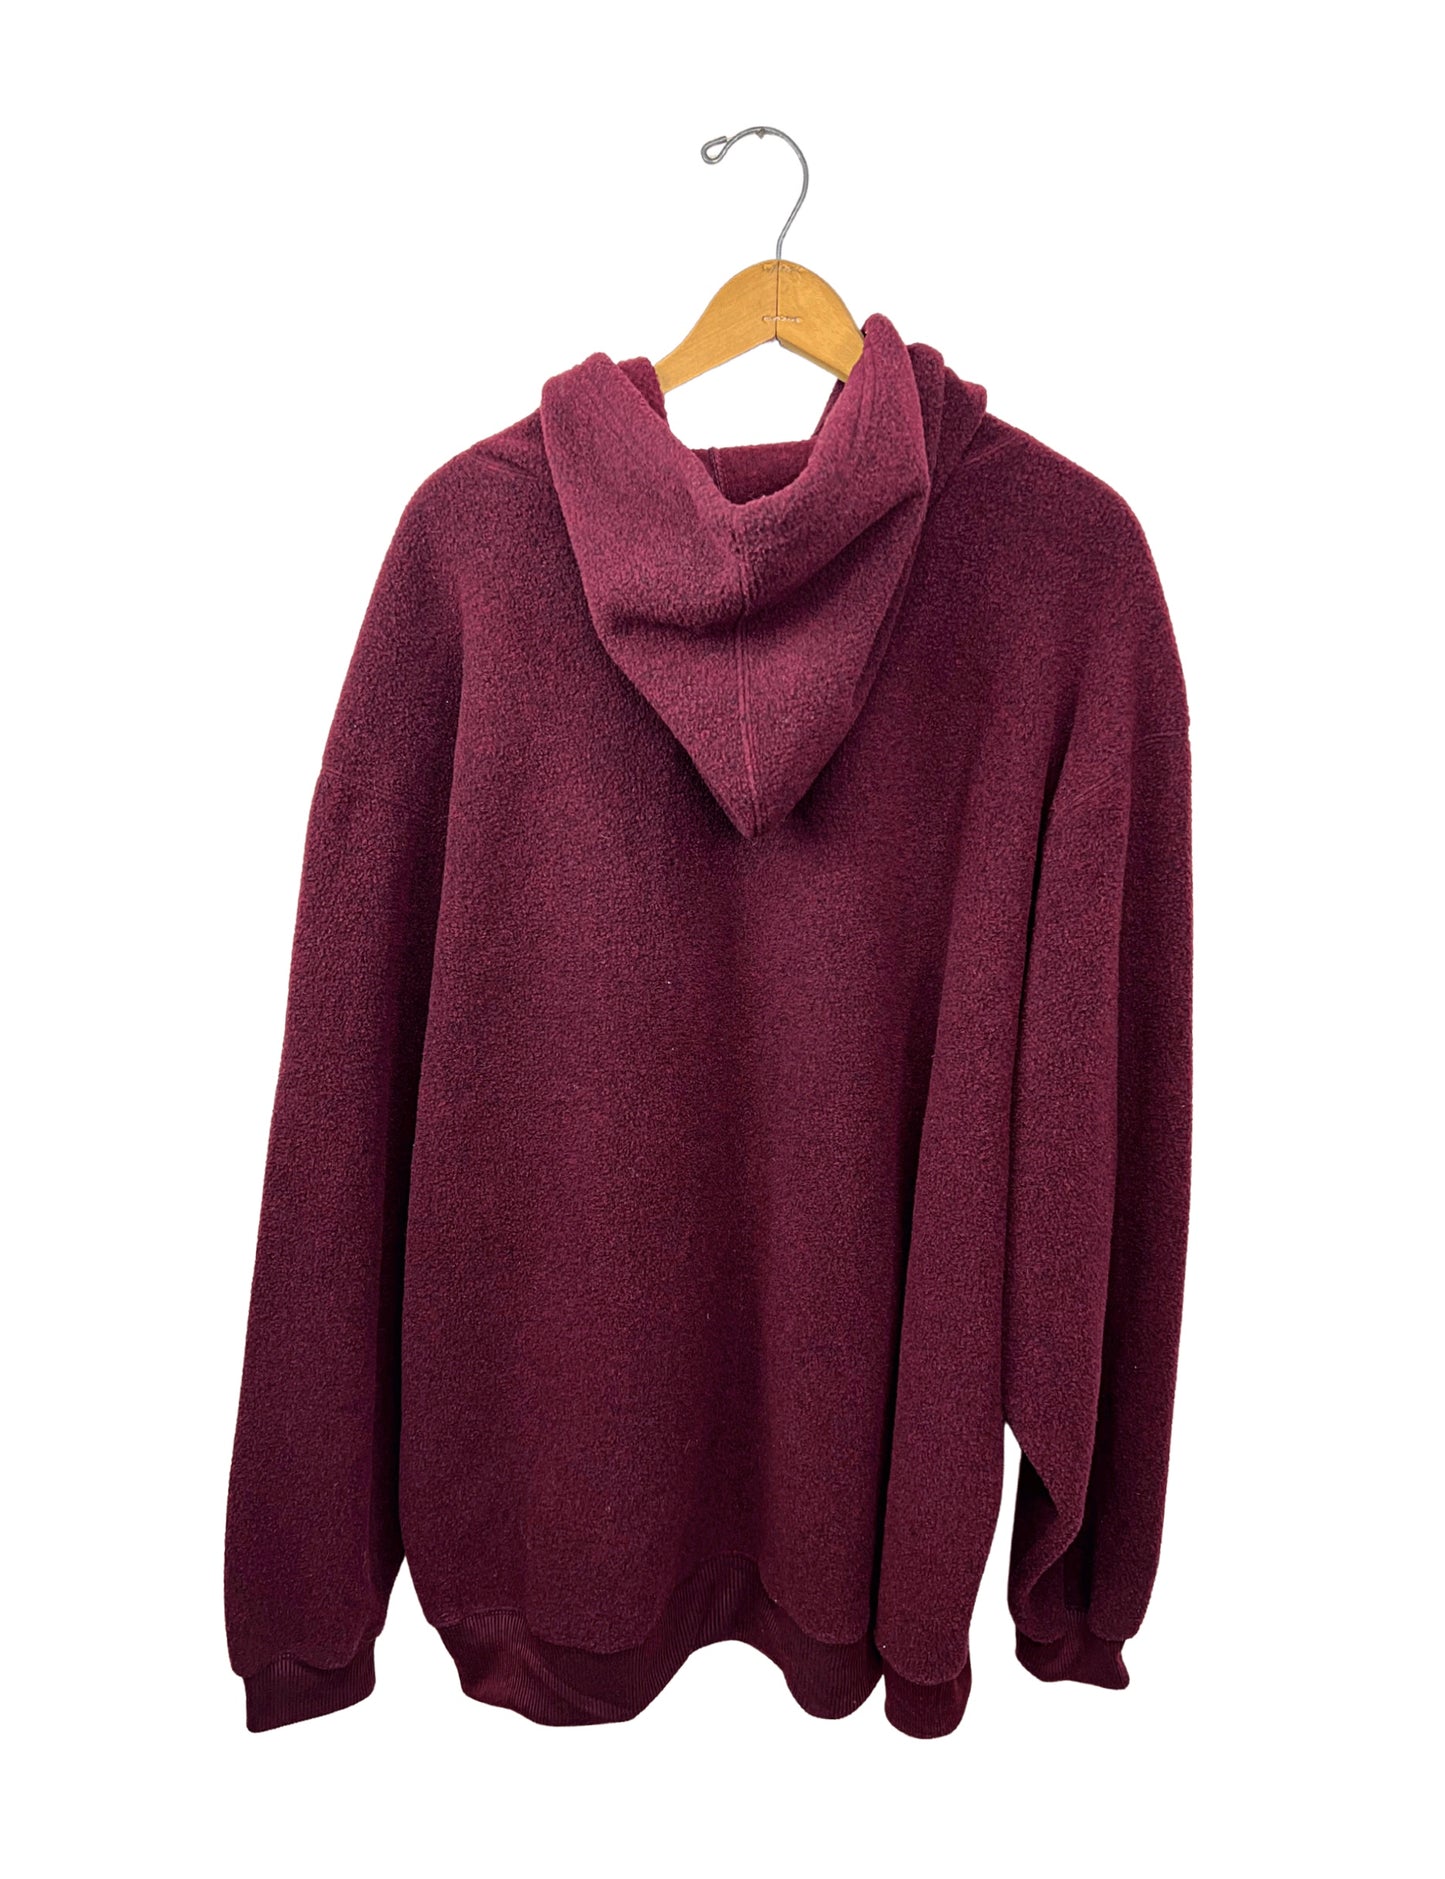 90’s BUM Equipment Fleece Hoodie Sweatshirt Size 1X/2X